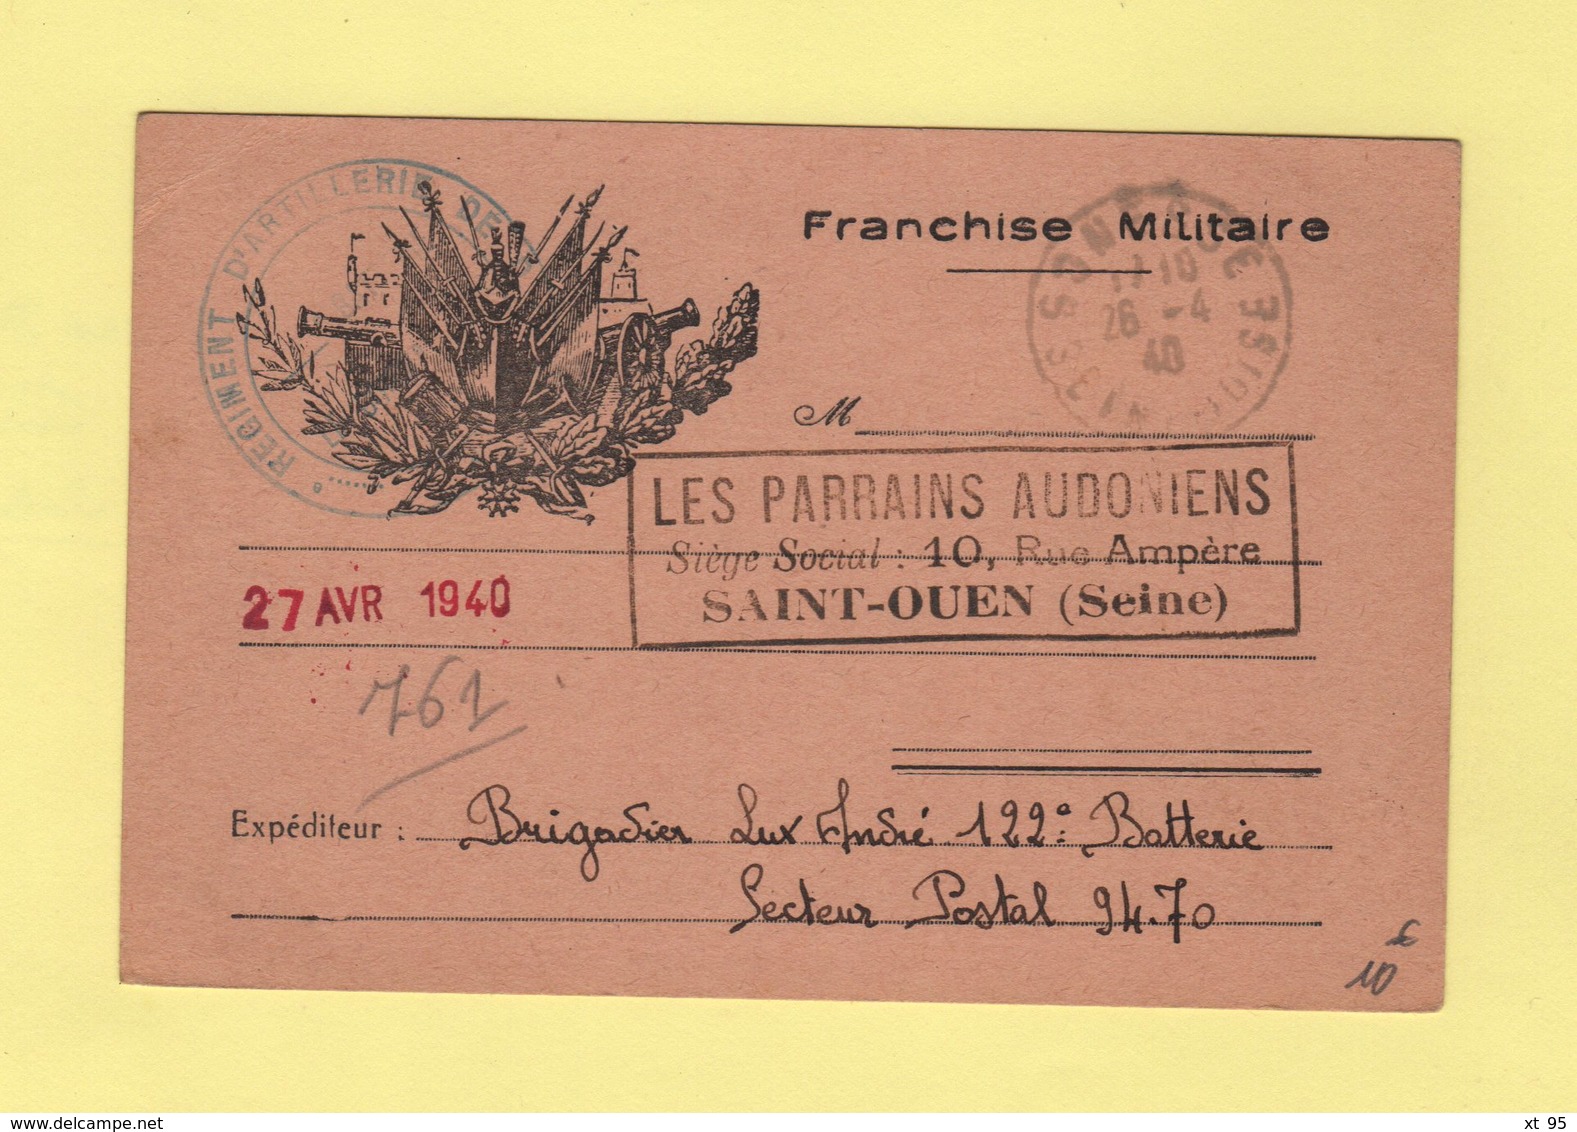 Carte De Franchise Militaire Illustree Adressee Aux Parrains Audoniens De Saint Ouen  - Gonesse Seine Et Oise 26-4-1940 - Guerra Del 1939-45